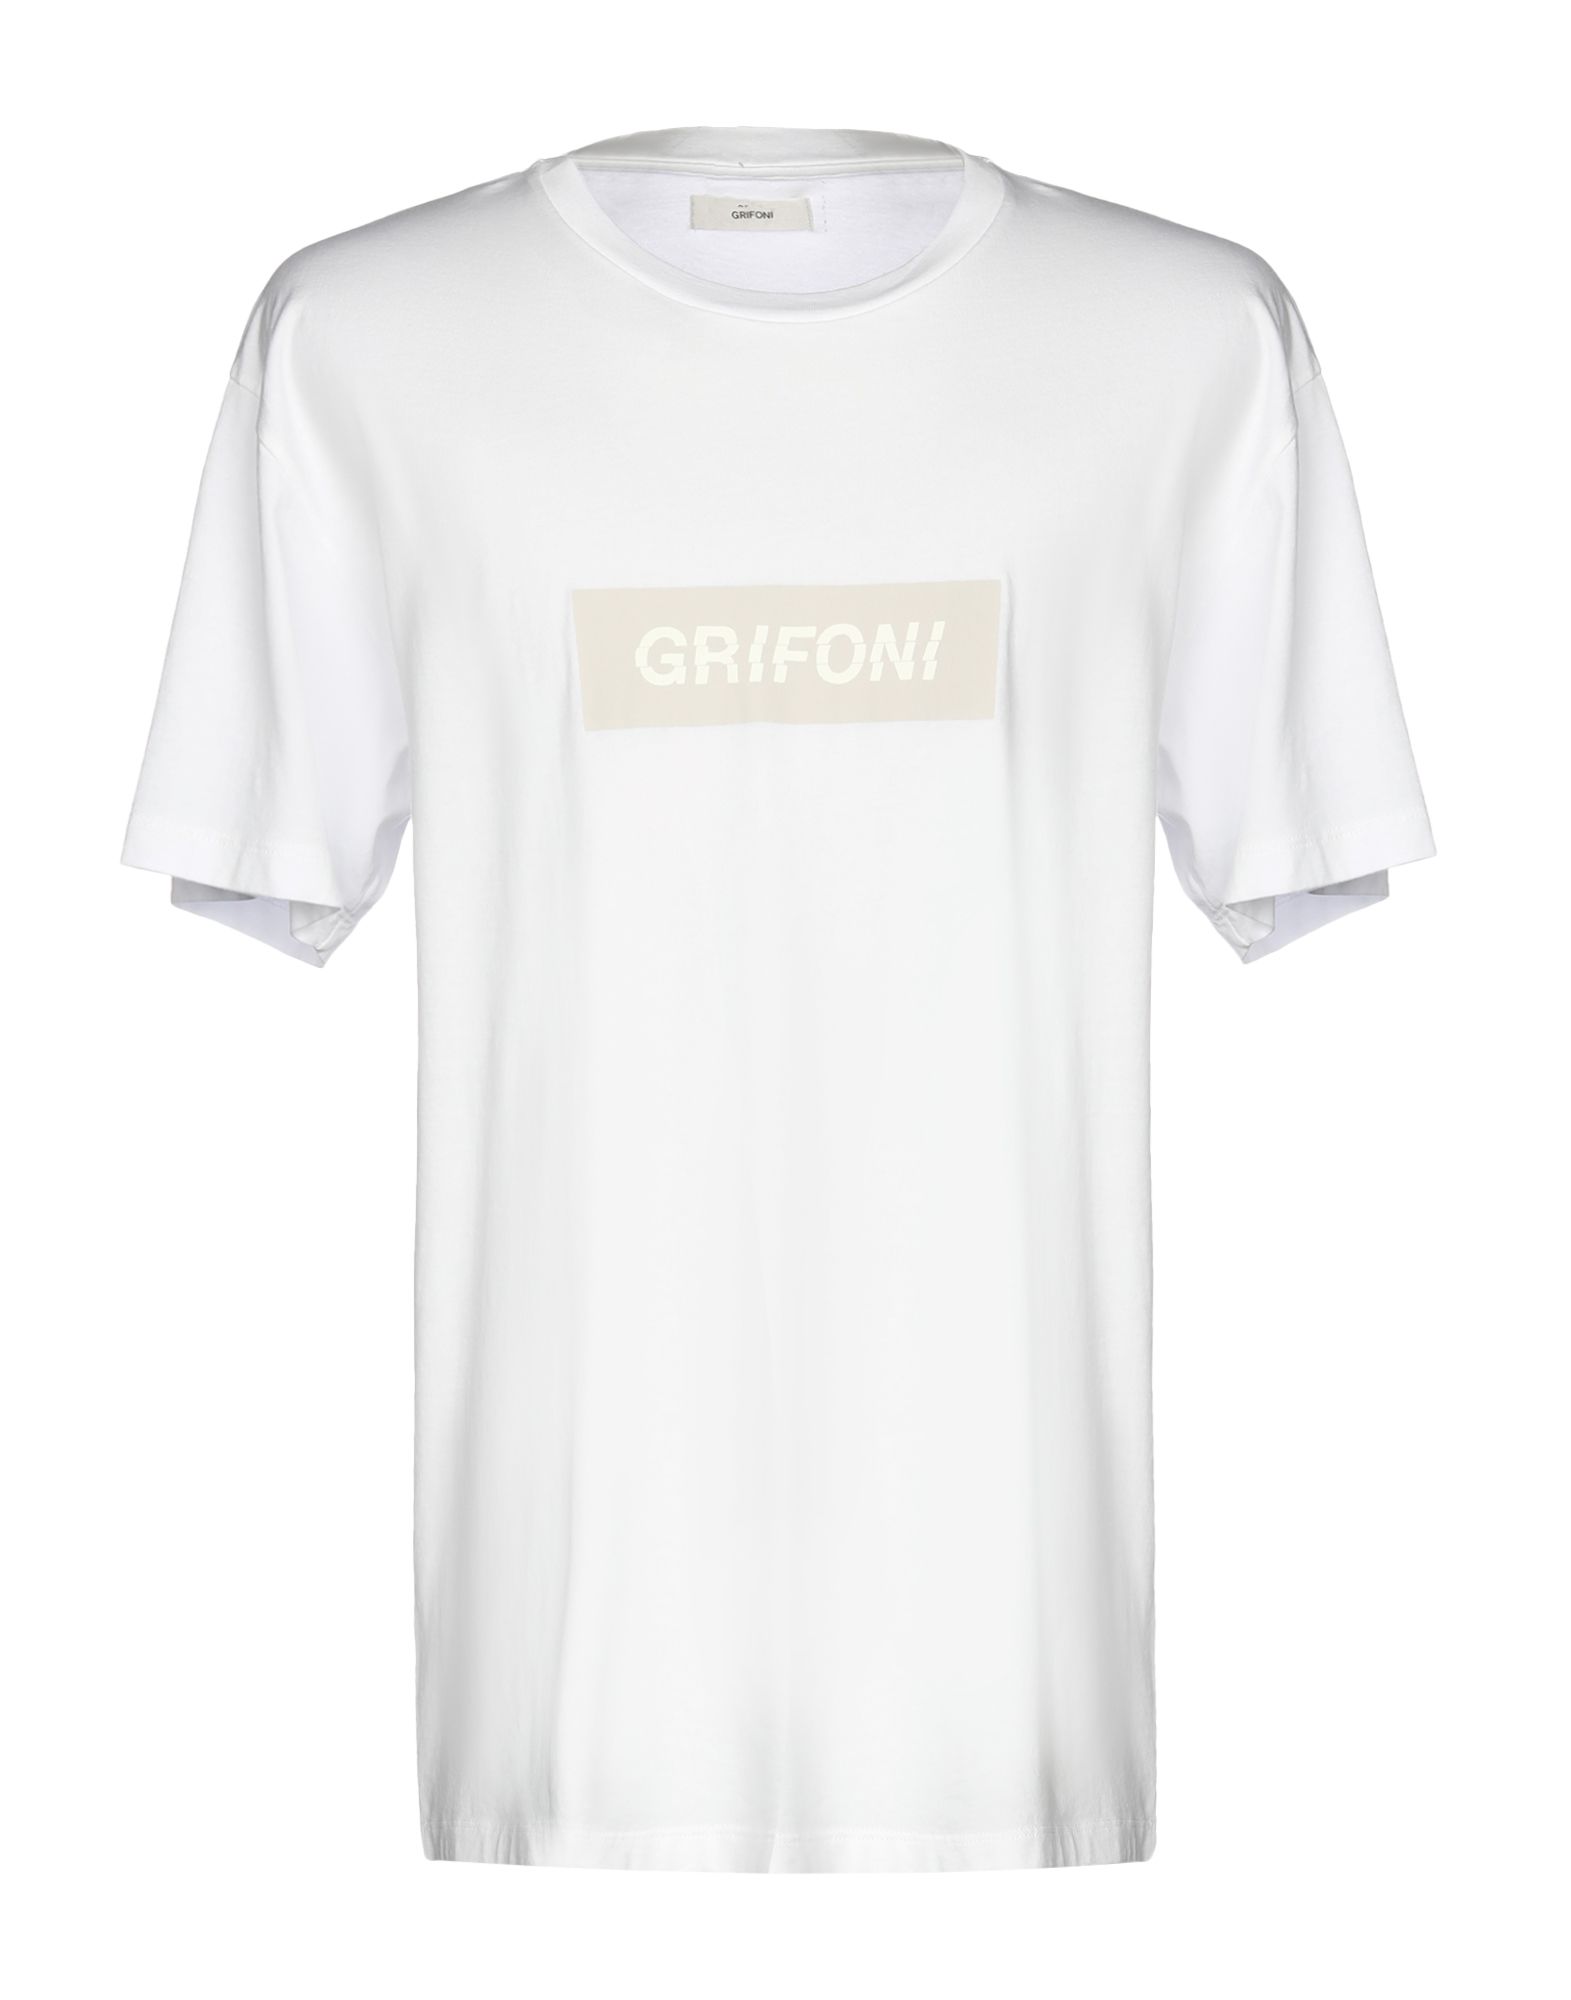 《送料無料》MAURO GRIFONI メンズ T シャツ ホワイト S コットン 100%